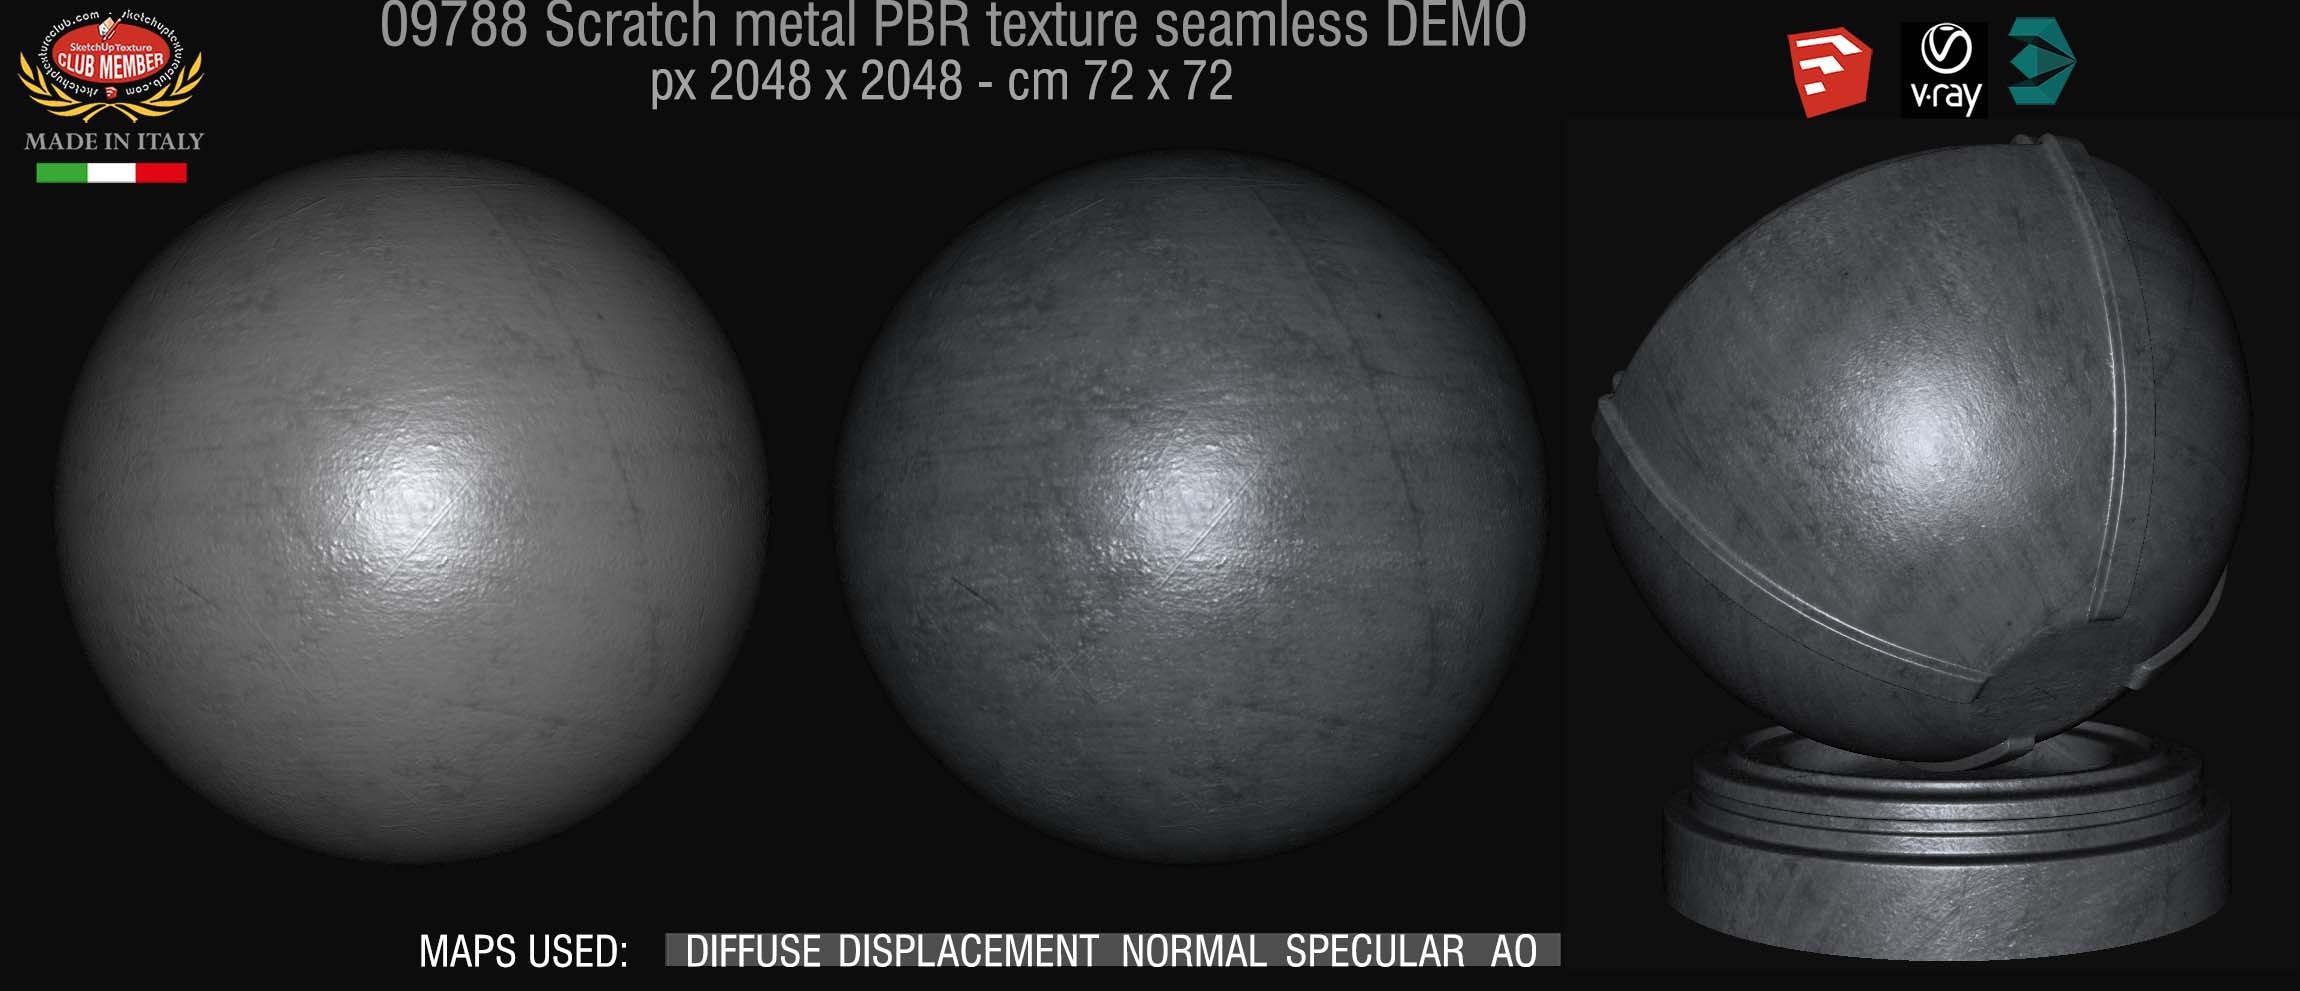 09788 Scratch metal PBR texture seamless DEMO